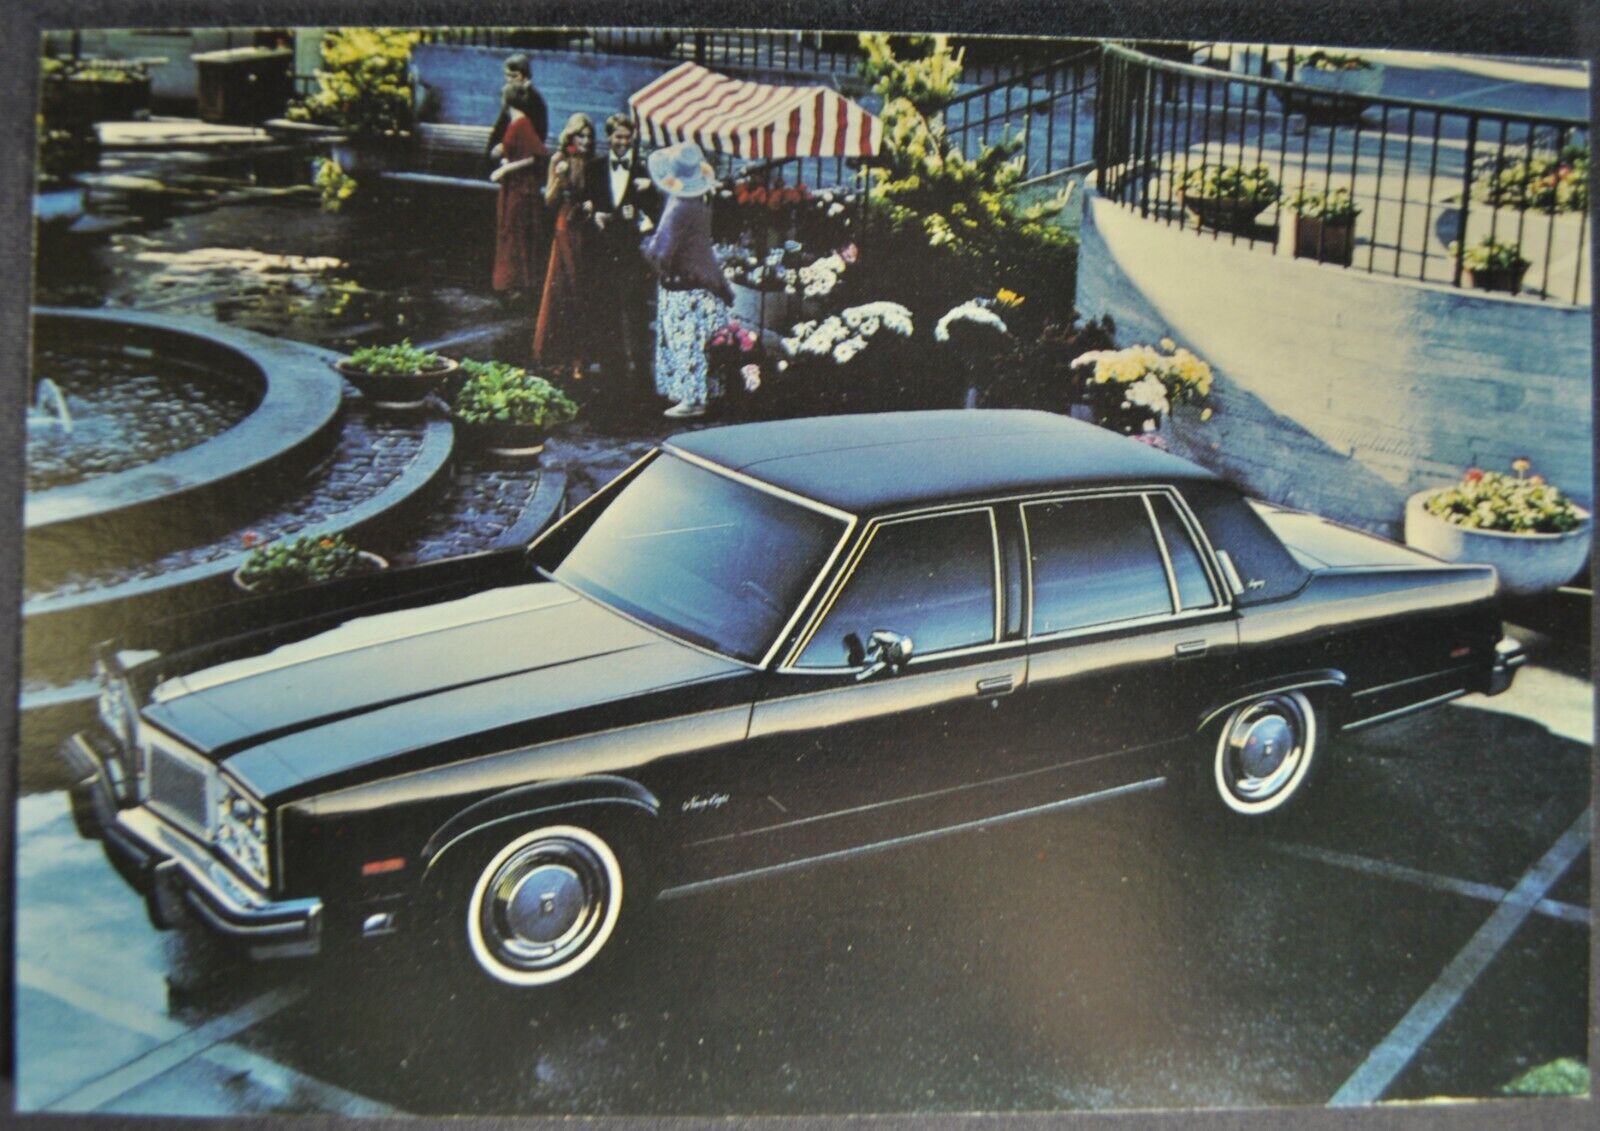 1977 Oldsmobile 98 Regency Sedan Large Postcard Excellent Original 77 | eBay